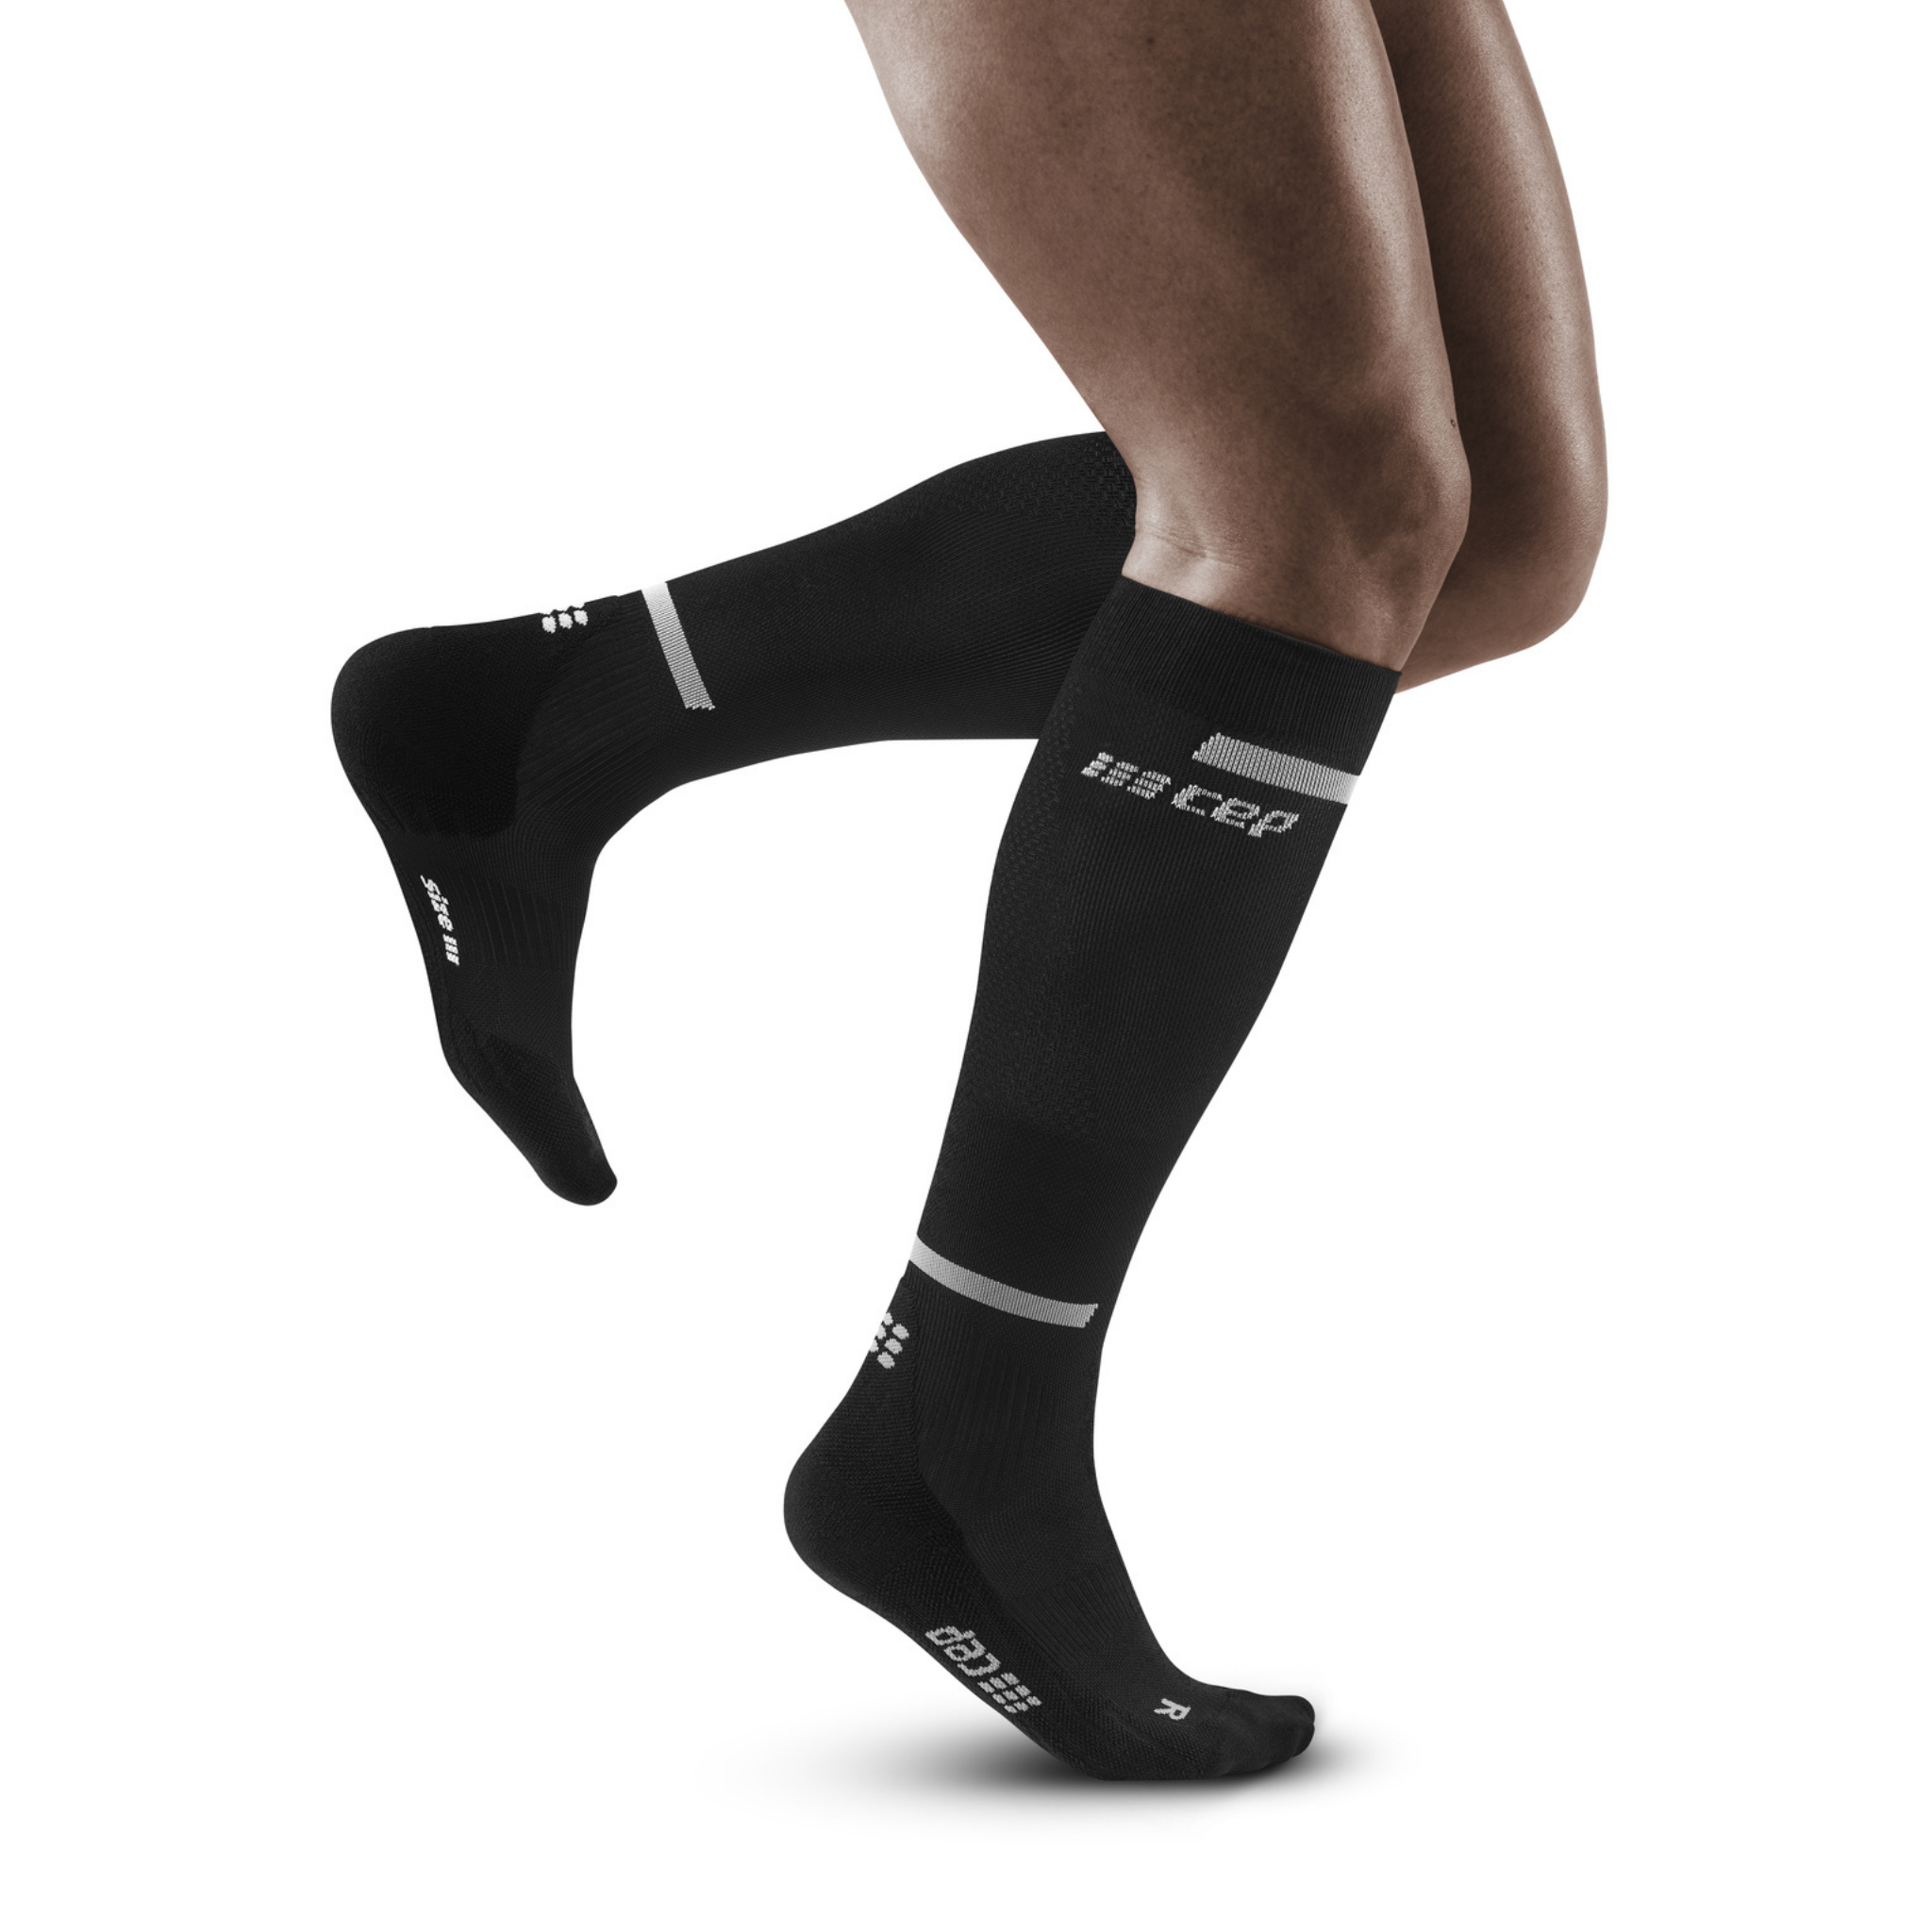 The Run Compression Tall Socks 4.0 for Men – CVR Compression Care